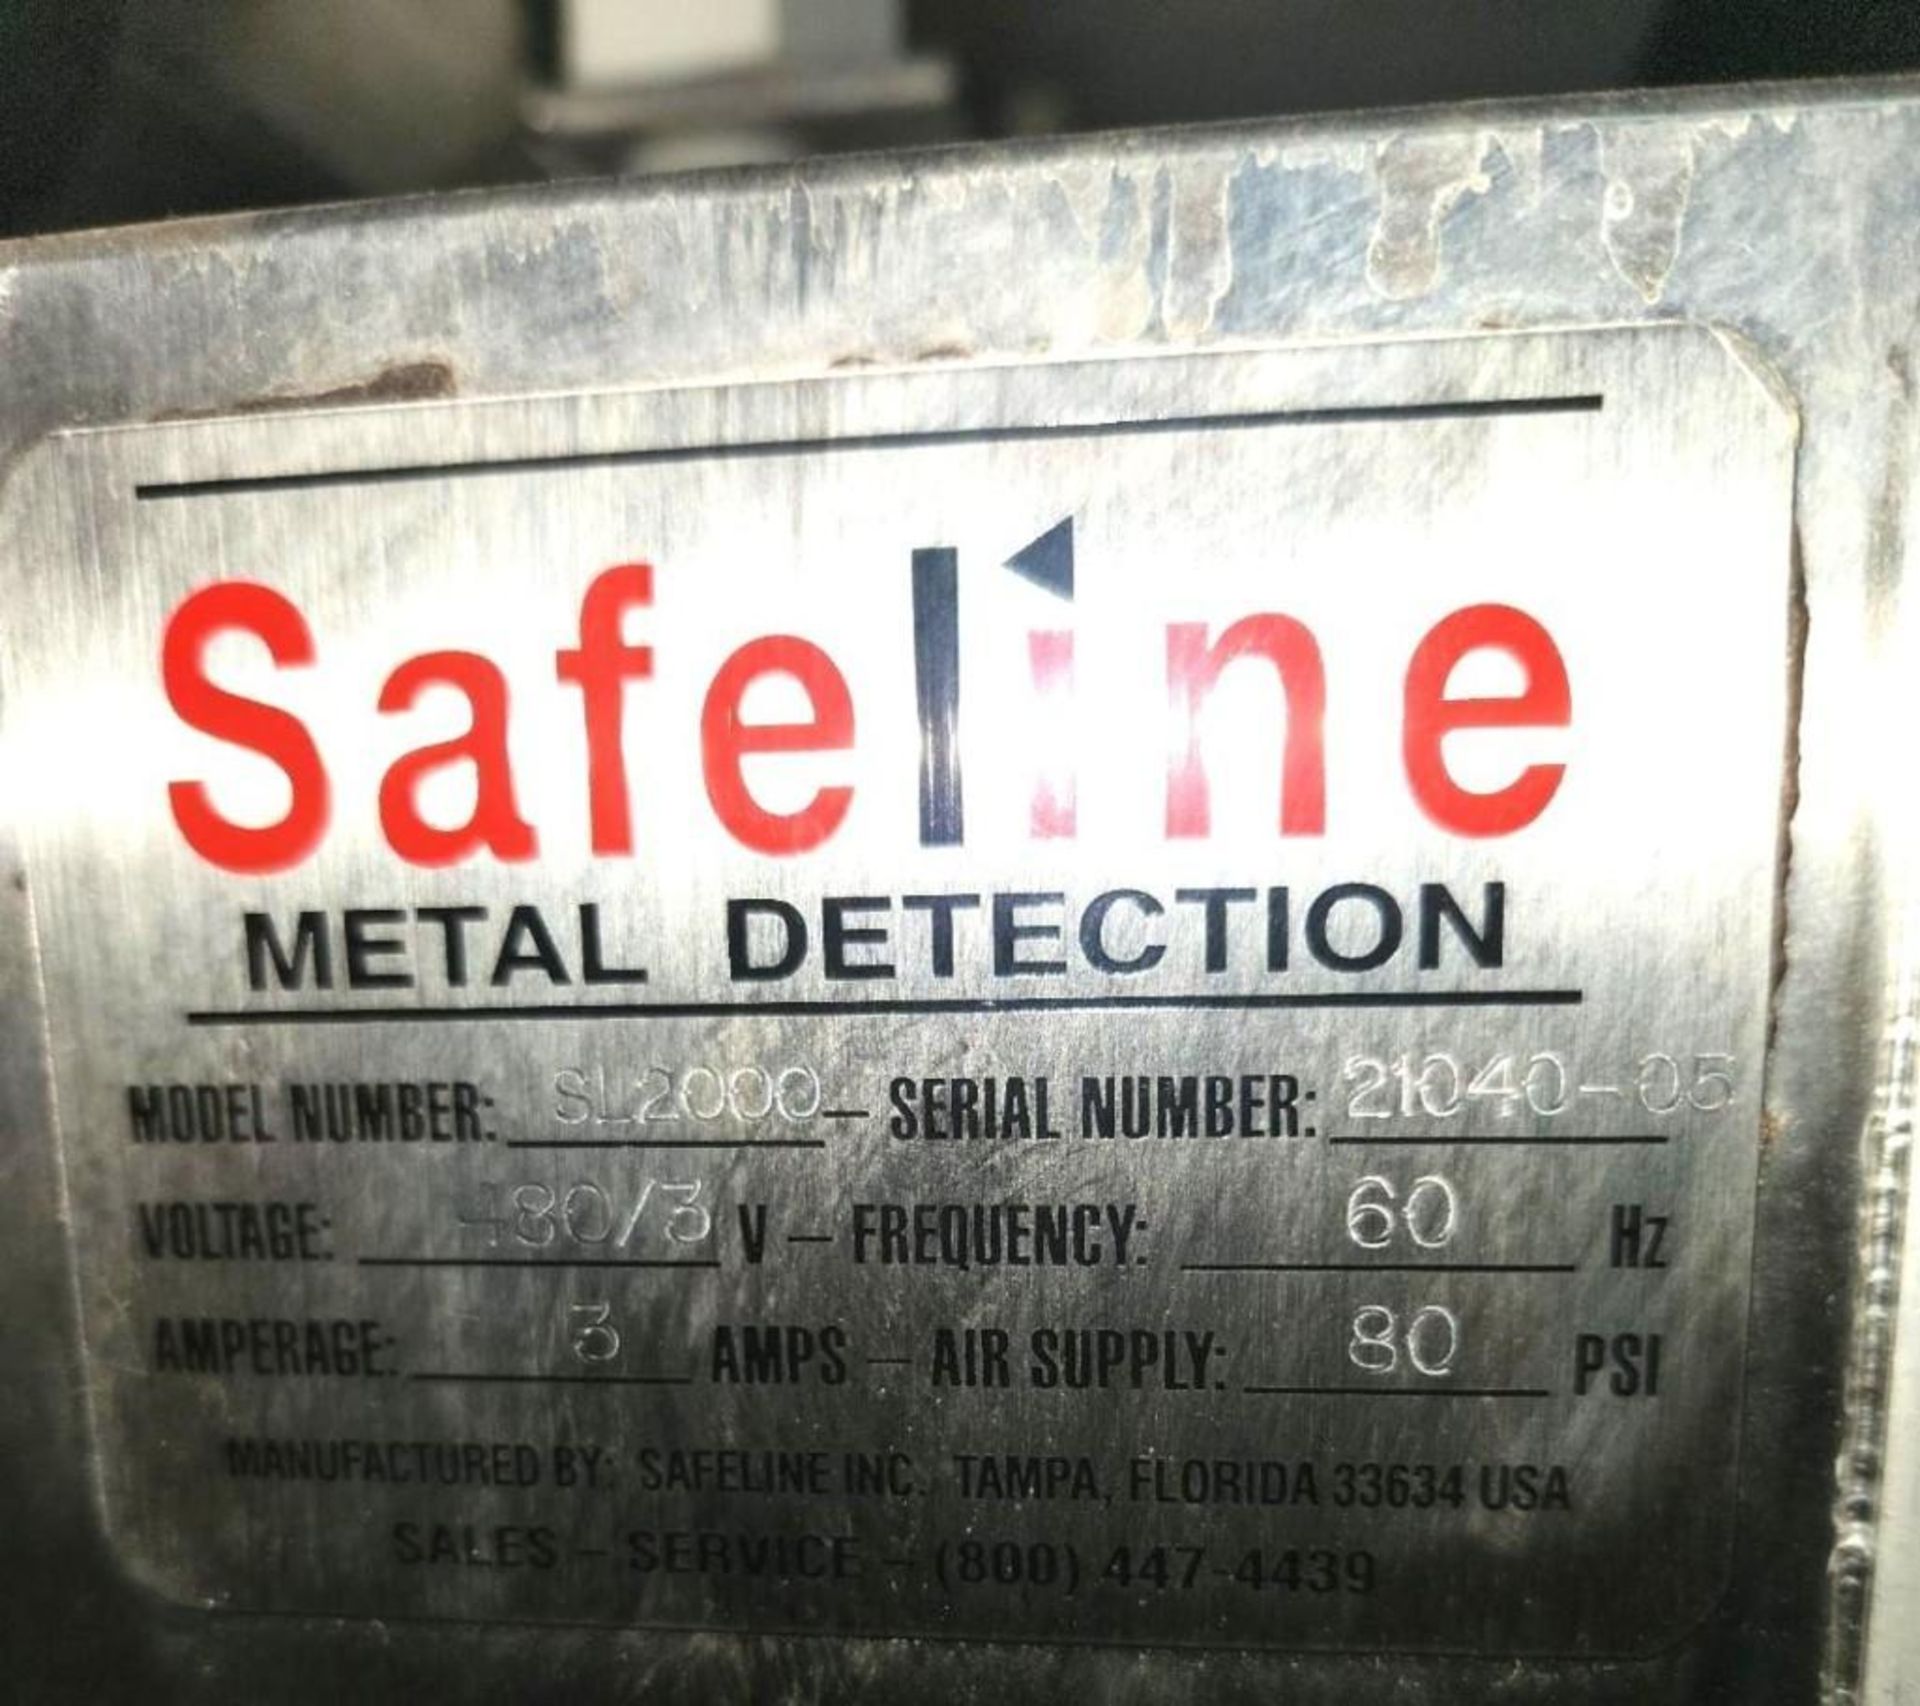 Safeline Model SL2000 Stainless Steel Sanitary Metal Detector - Image 7 of 7